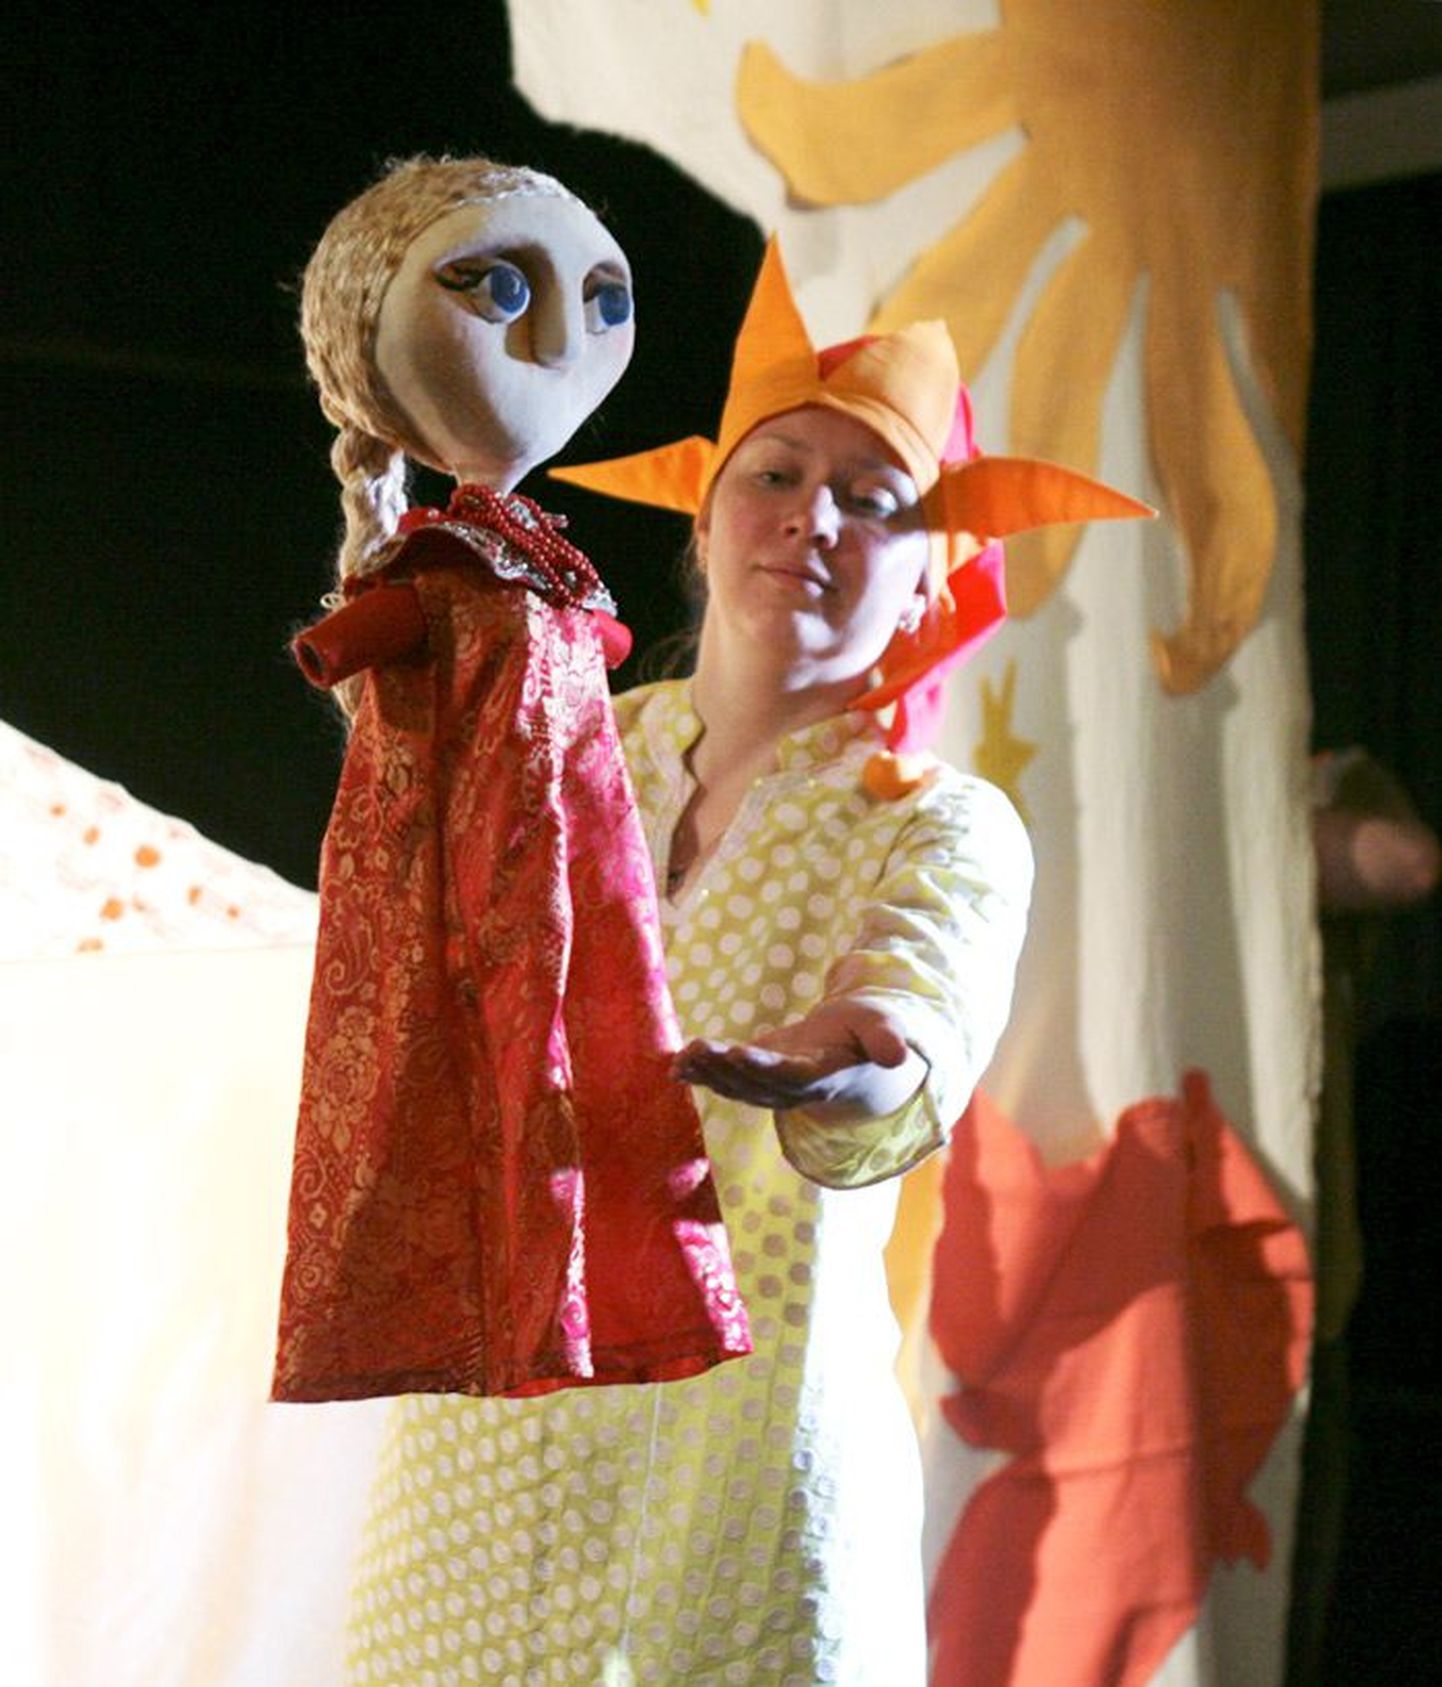 В динамичном красочном спектакле Русского театра кукол «Сказка о царе Салтане» играют и куклы, и актеры — скоморохи-затейники, веселящие почтенную публику.